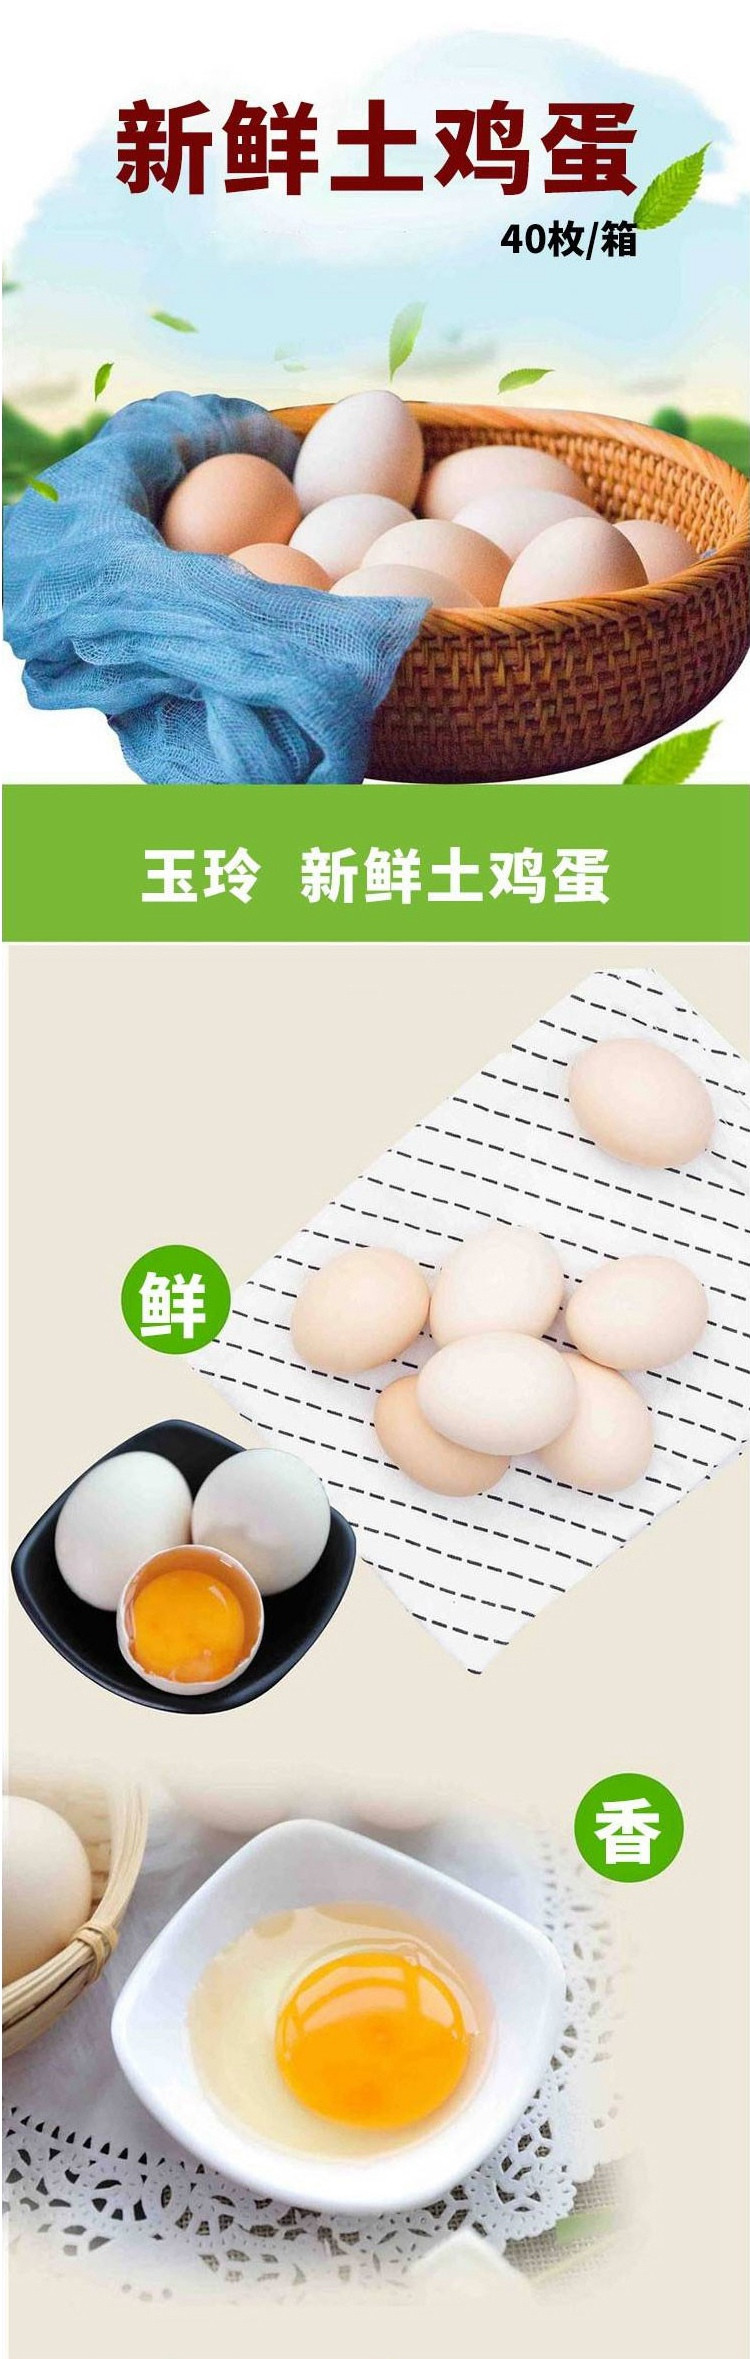 农家自产 【河南邮政】玉玲 柴鸡蛋40枚/箱